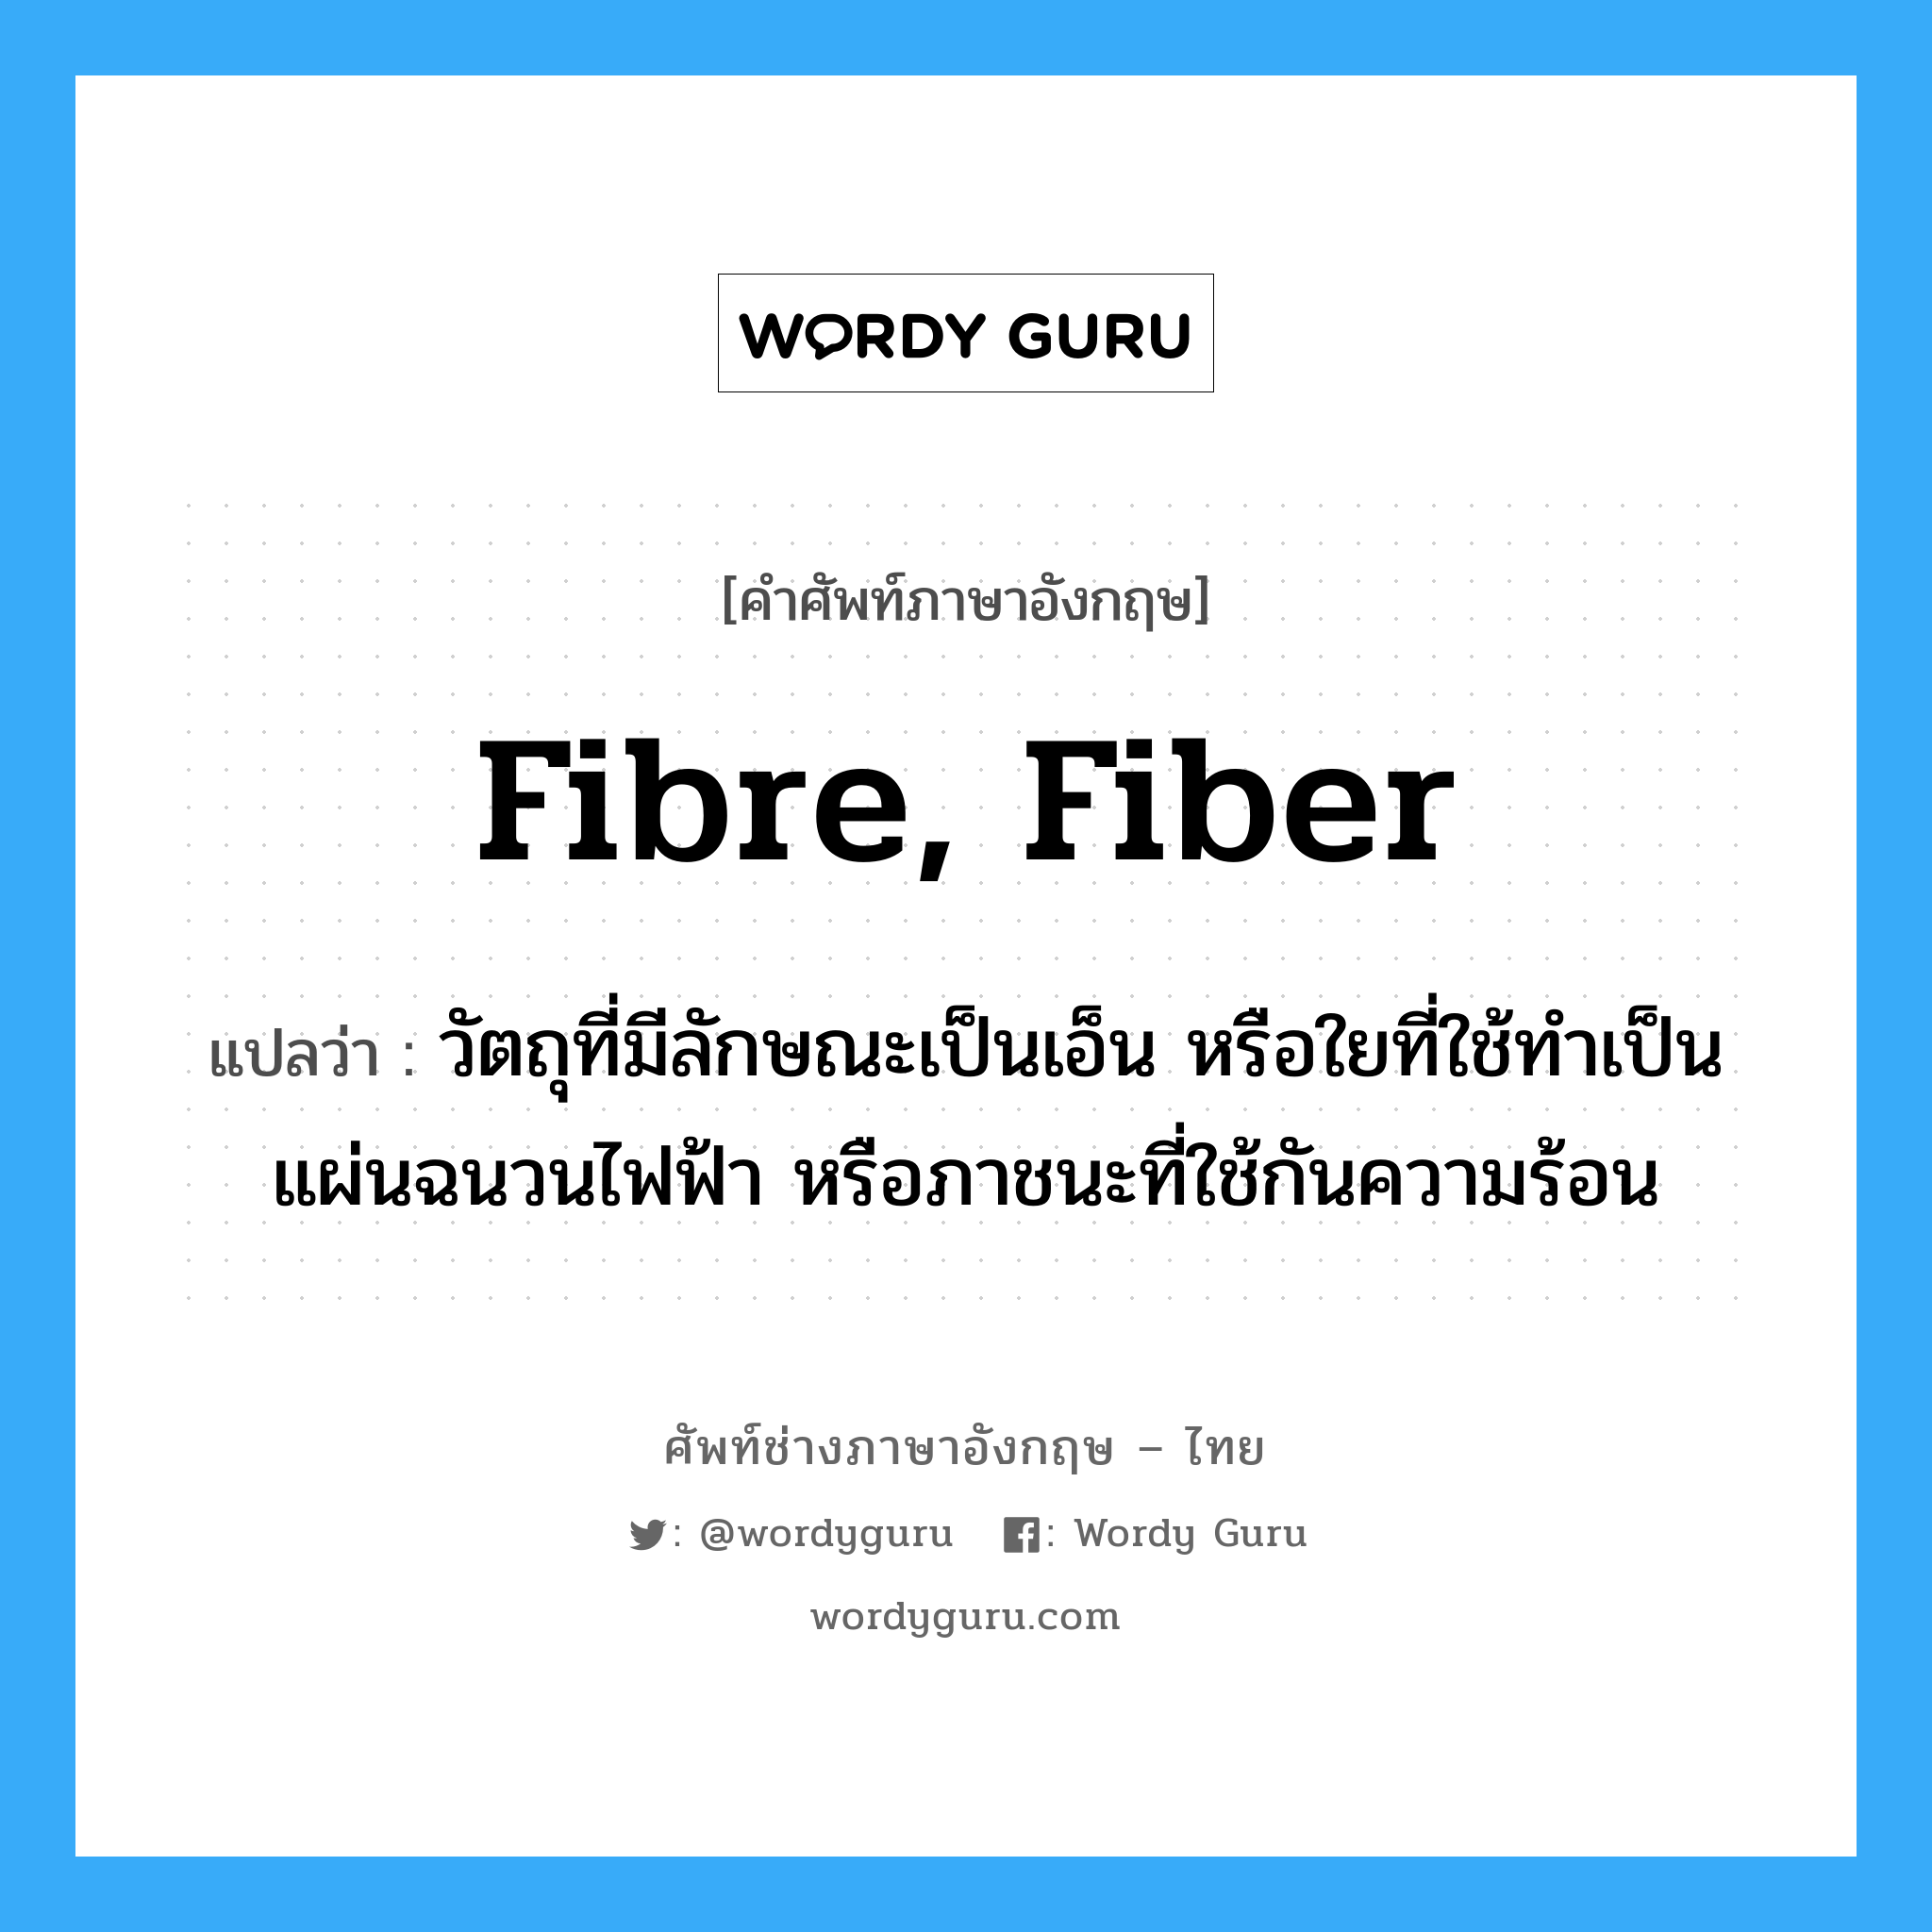 fibre, fiber แปลว่า?, คำศัพท์ช่างภาษาอังกฤษ - ไทย fibre, fiber คำศัพท์ภาษาอังกฤษ fibre, fiber แปลว่า วัตถุที่มีลักษณะเป็นเอ็น หรือใยที่ใช้ทำเป็นแผ่นฉนวนไฟฟ้า หรือภาชนะที่ใช้กันความร้อน